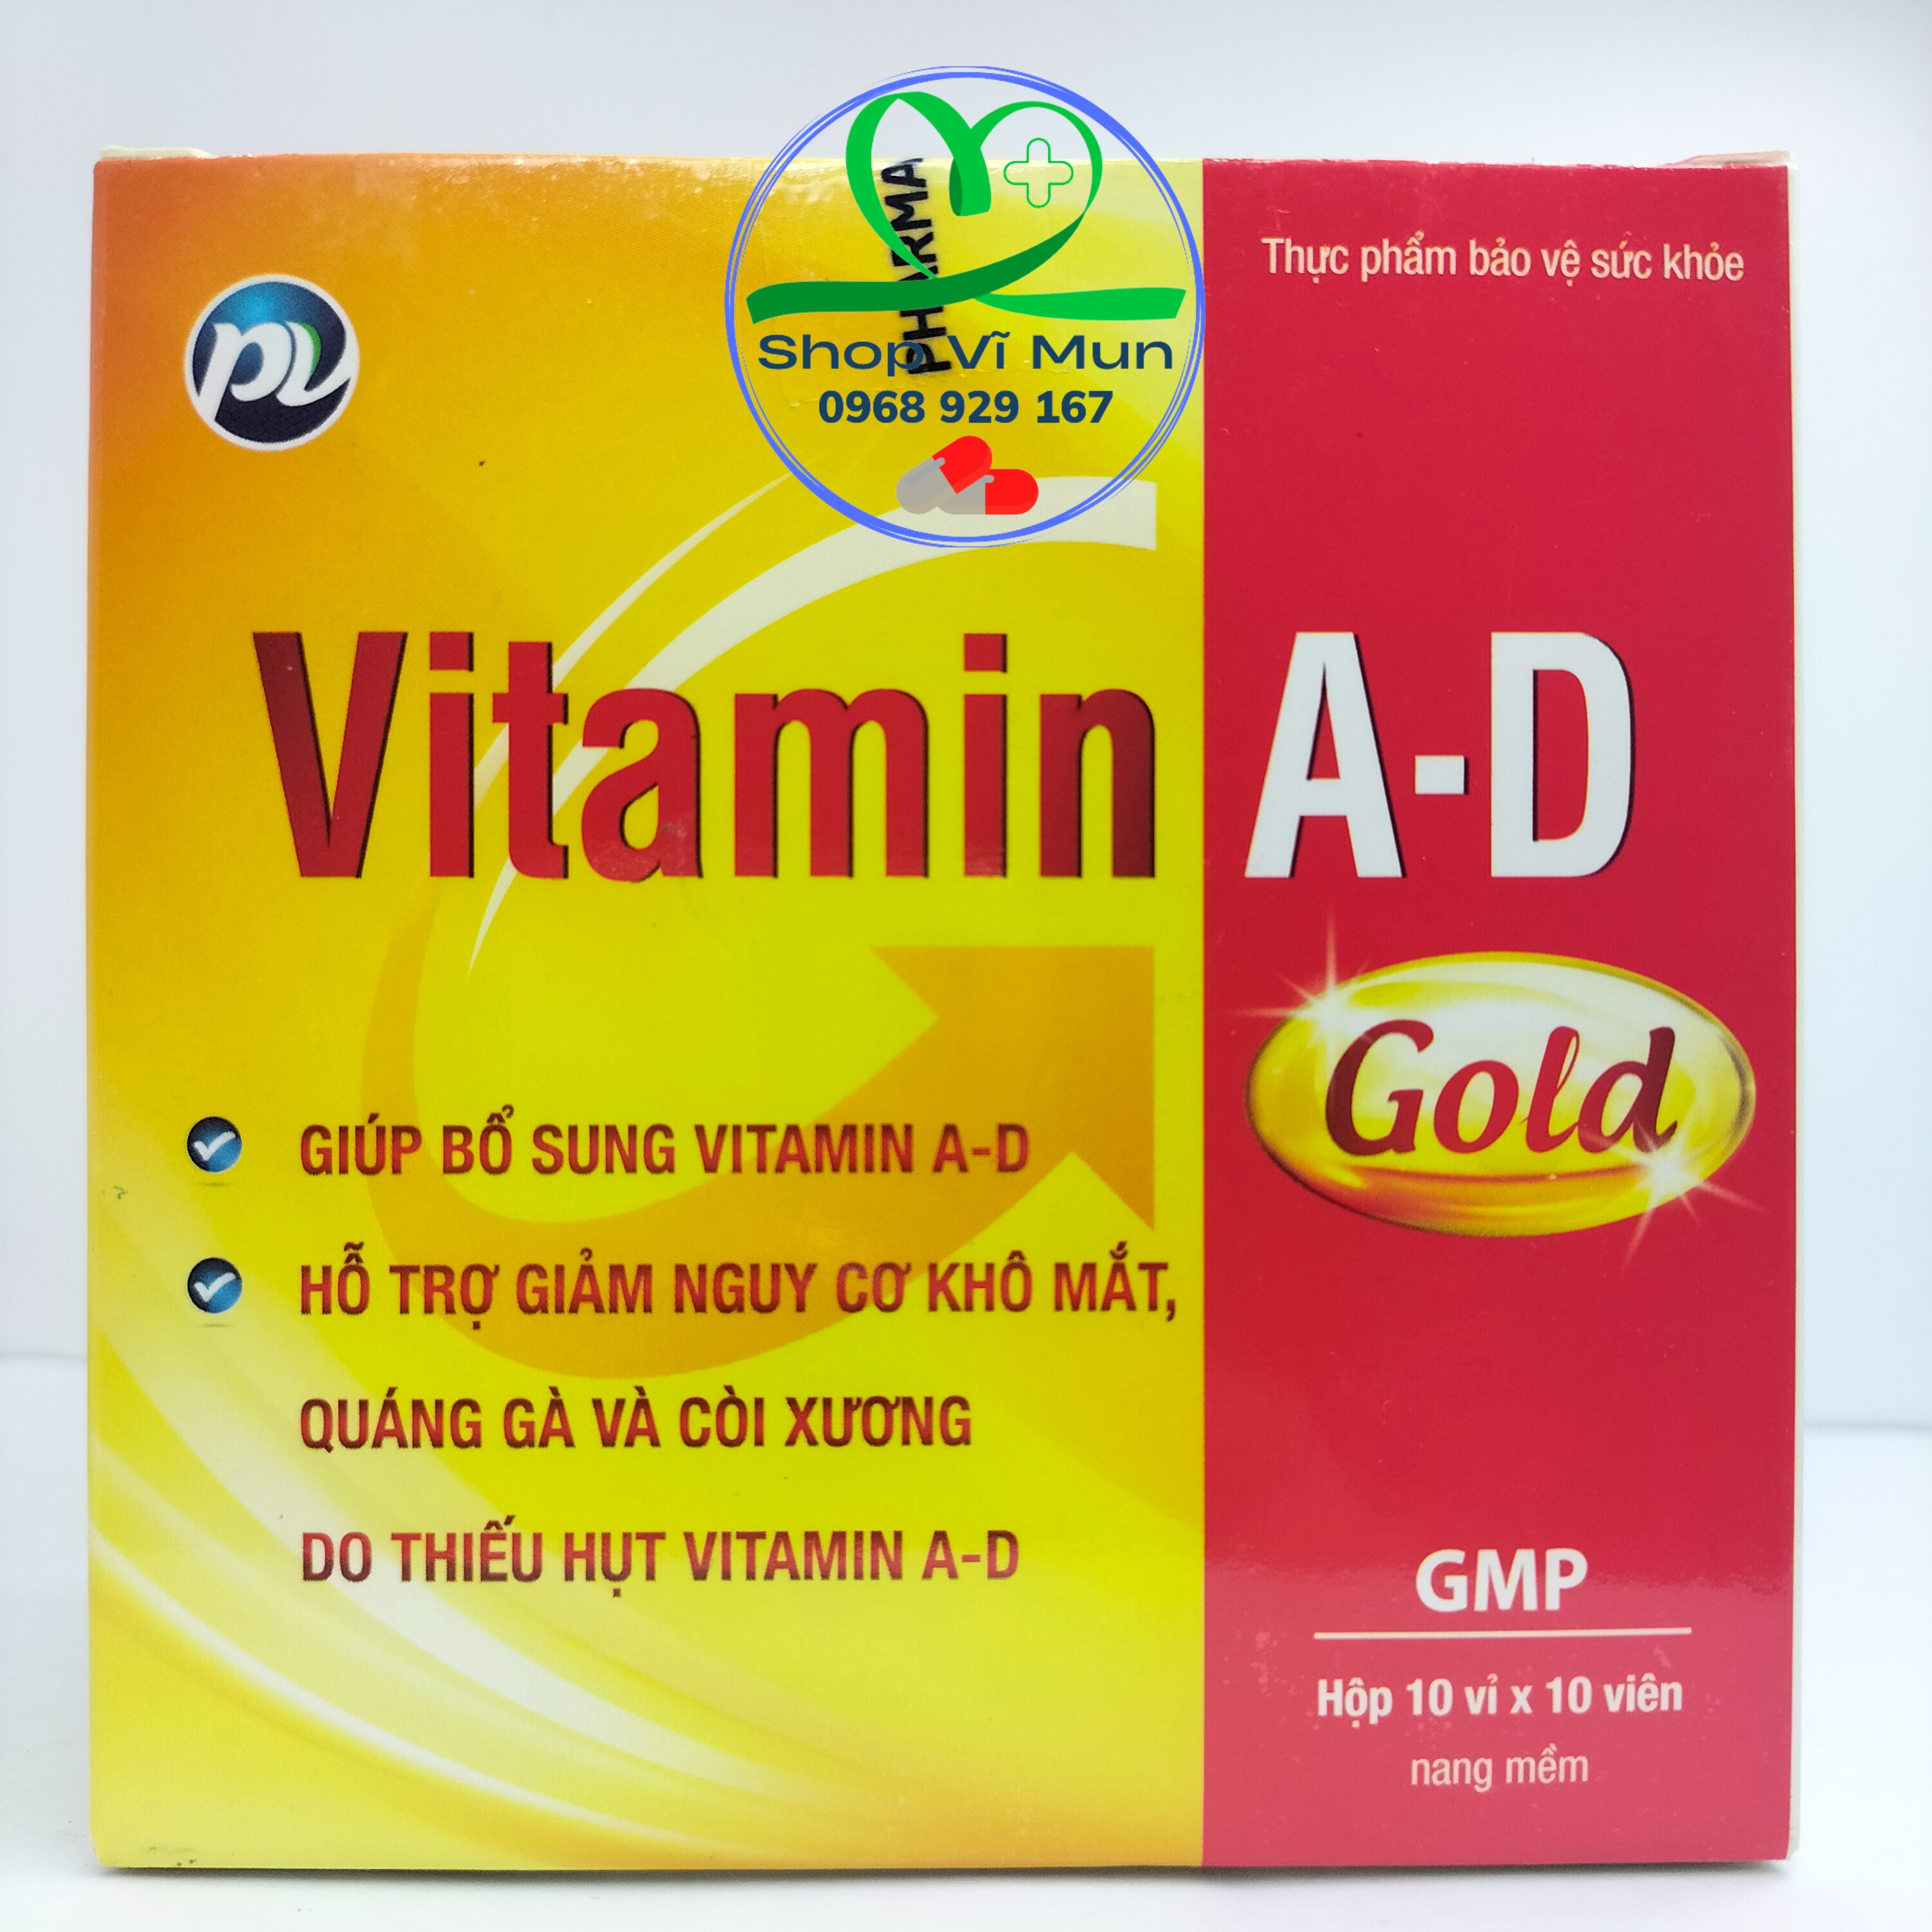 Vitamin A-D Gold Phúc Vinh - Giúp bổ sung vitamin a-d, giảm nguy cơ khô mắt